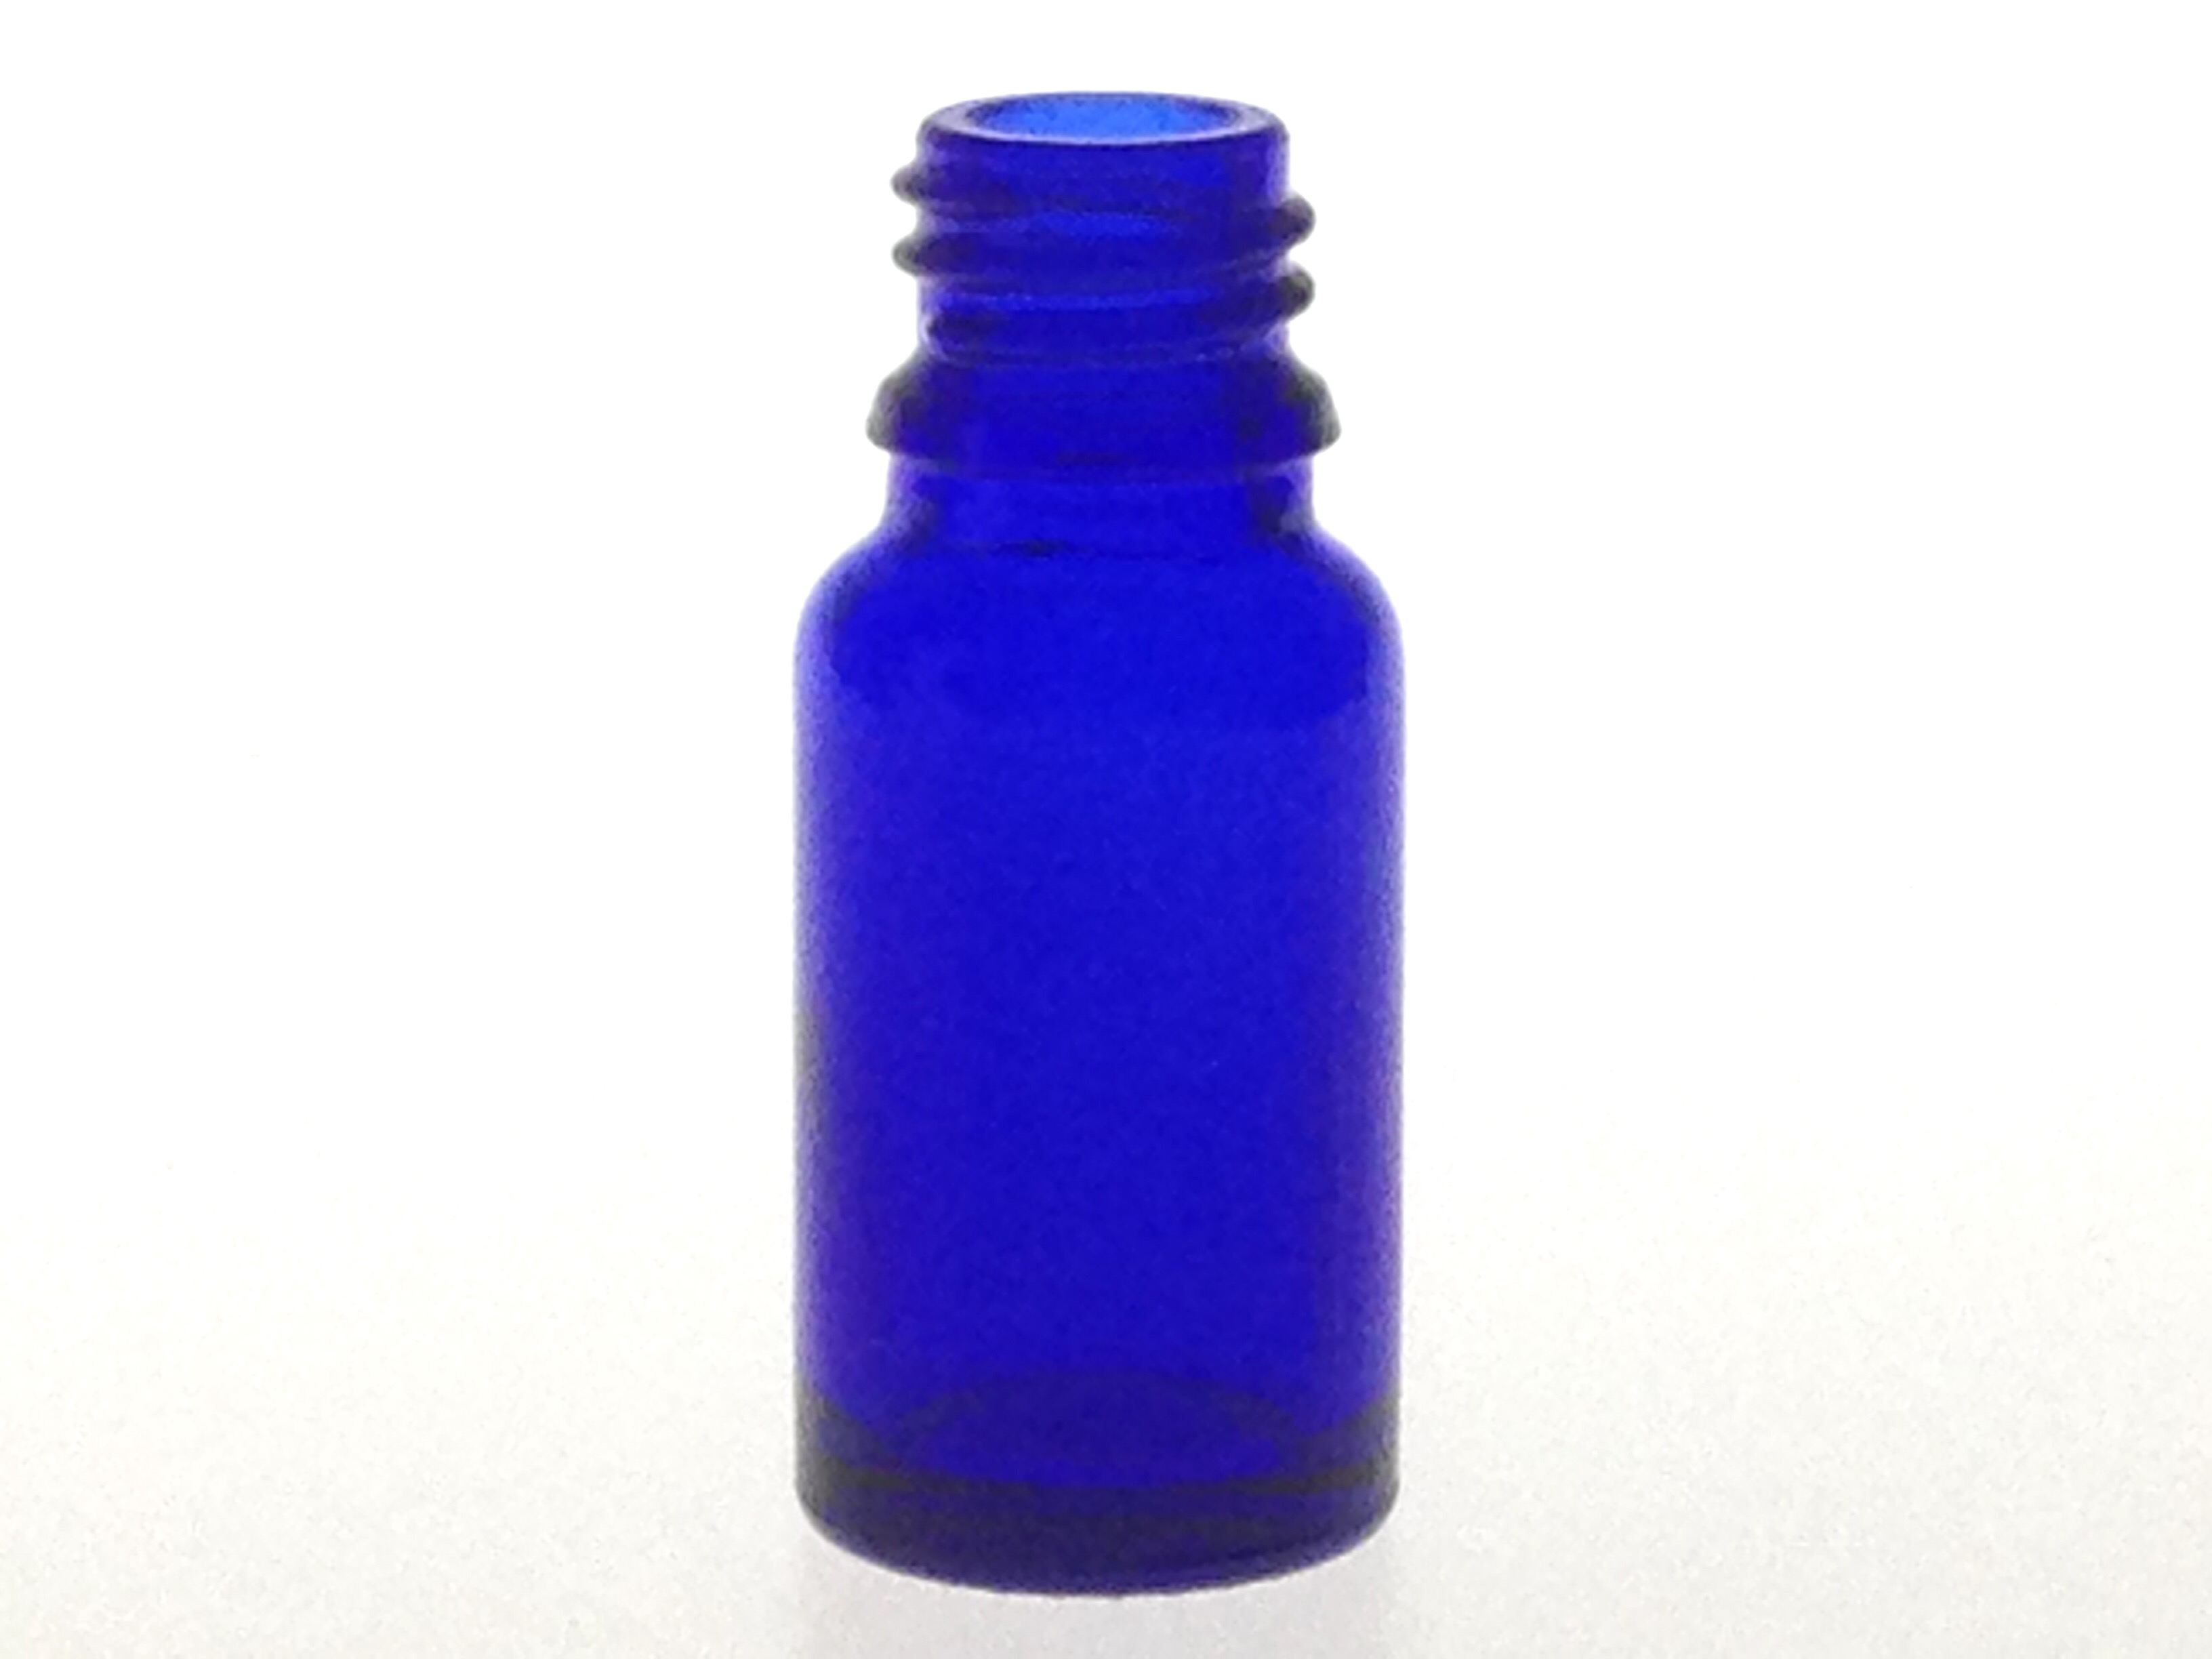 DROPPER BOTTLE BLUE GLASS 10 ML